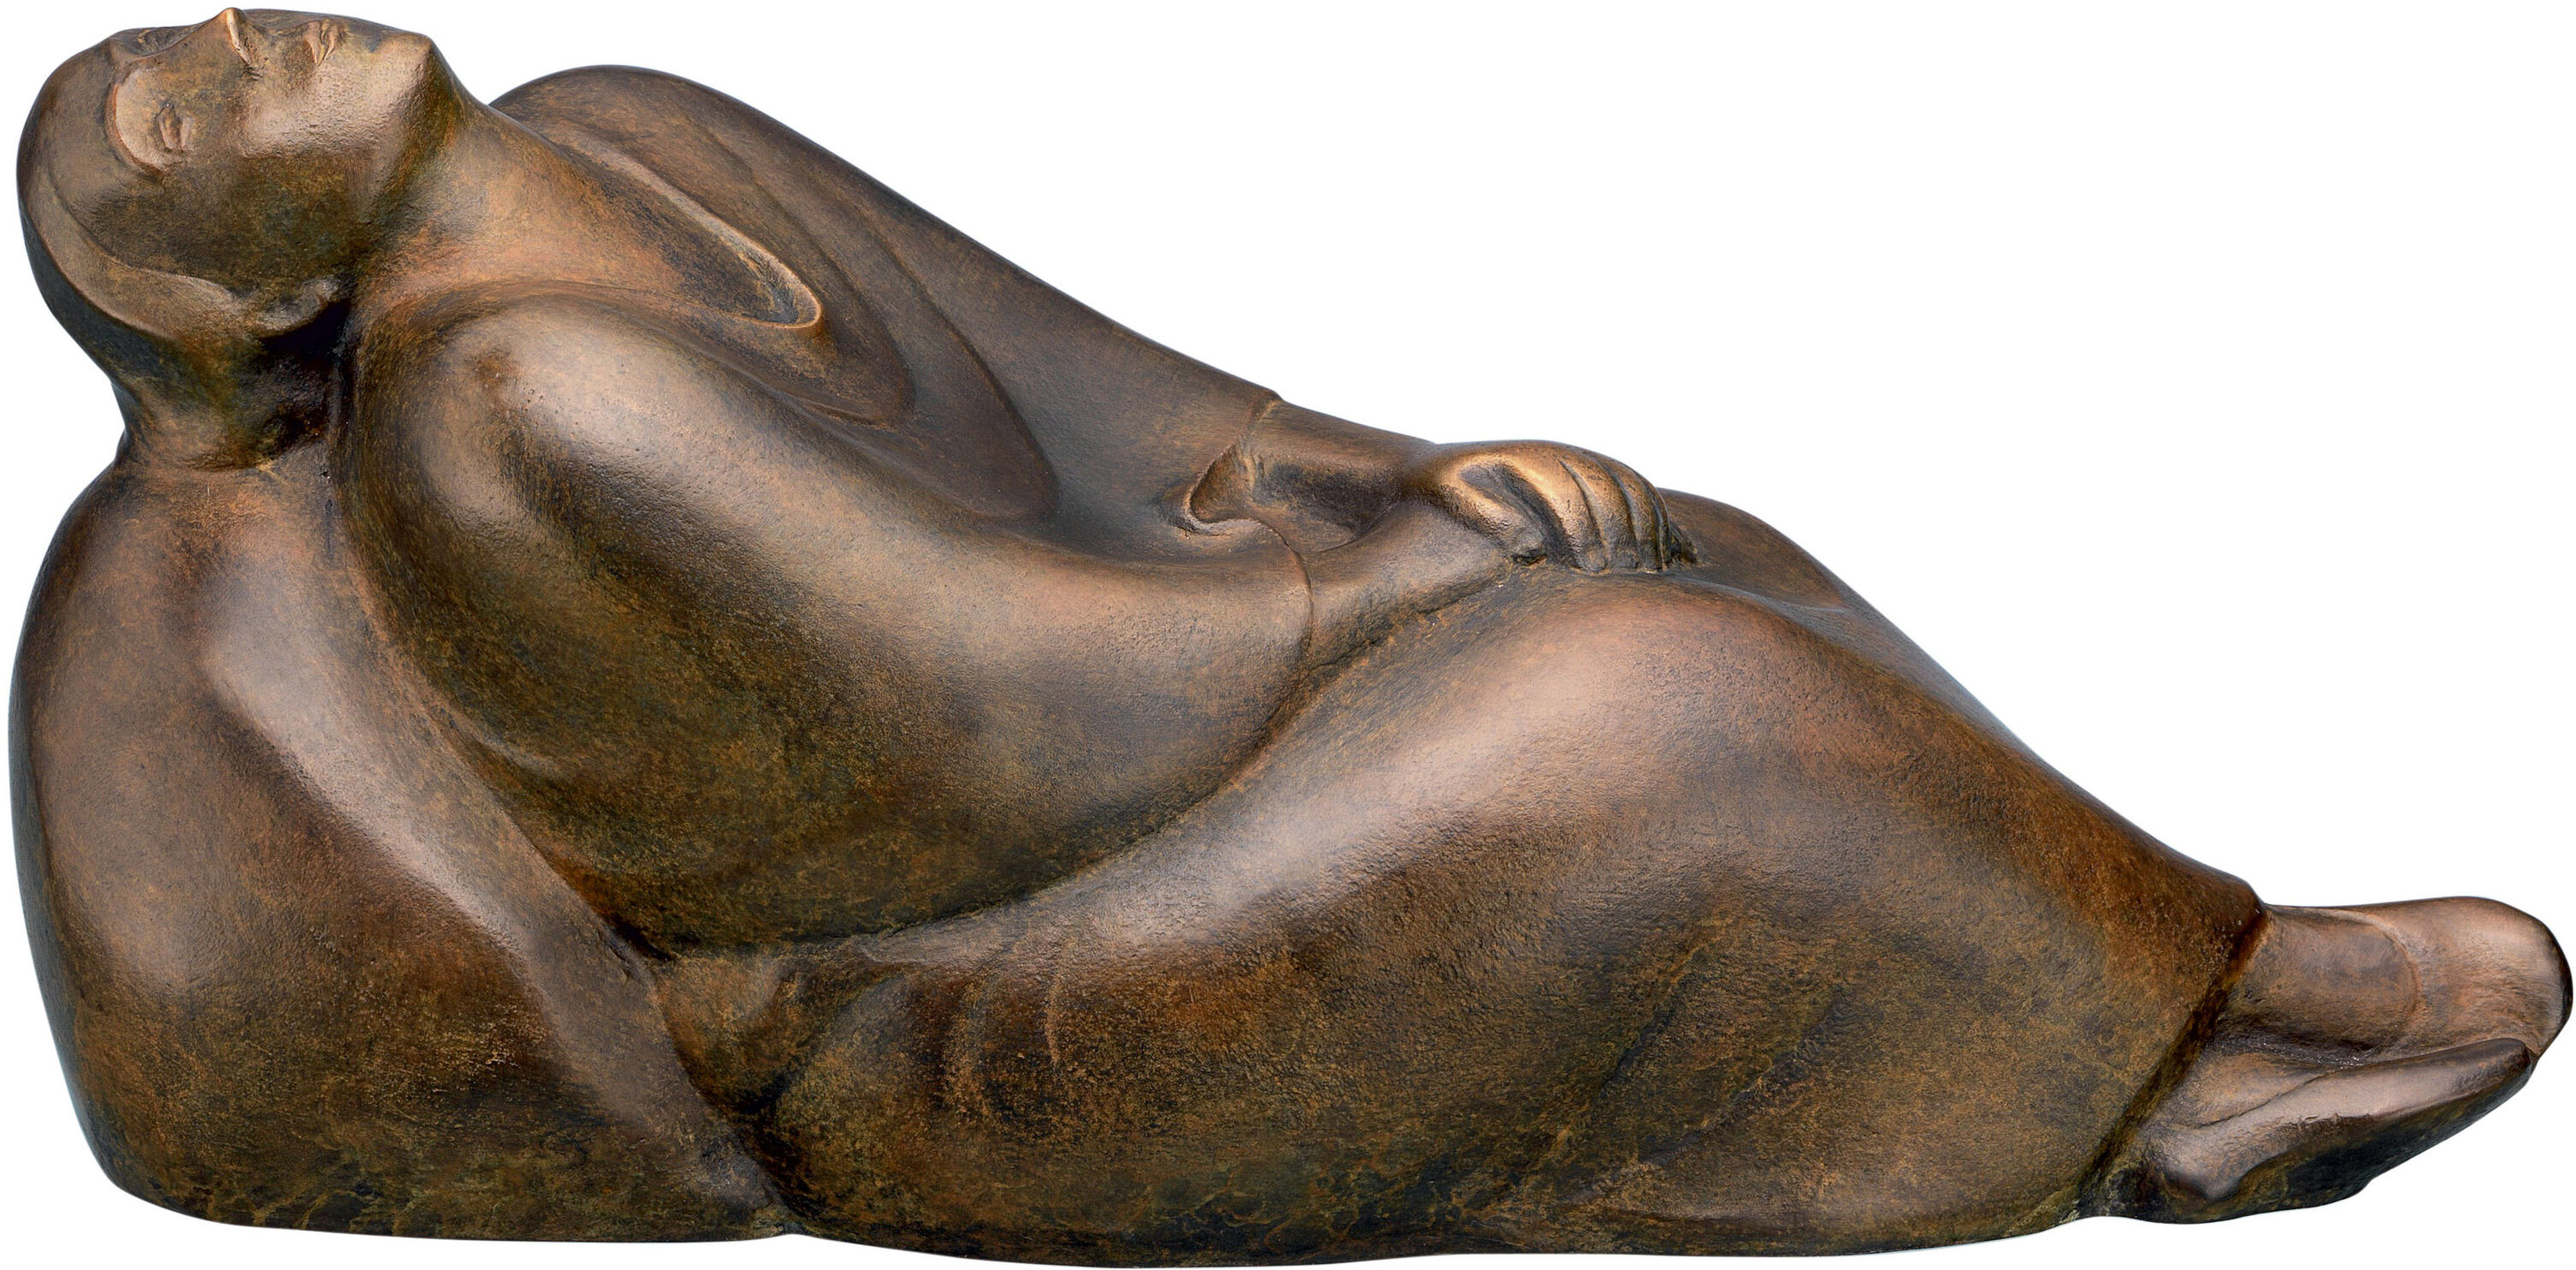 Skulptur "Träumendes Weib" (1912), Reduktion in Bronze von Ernst Barlach